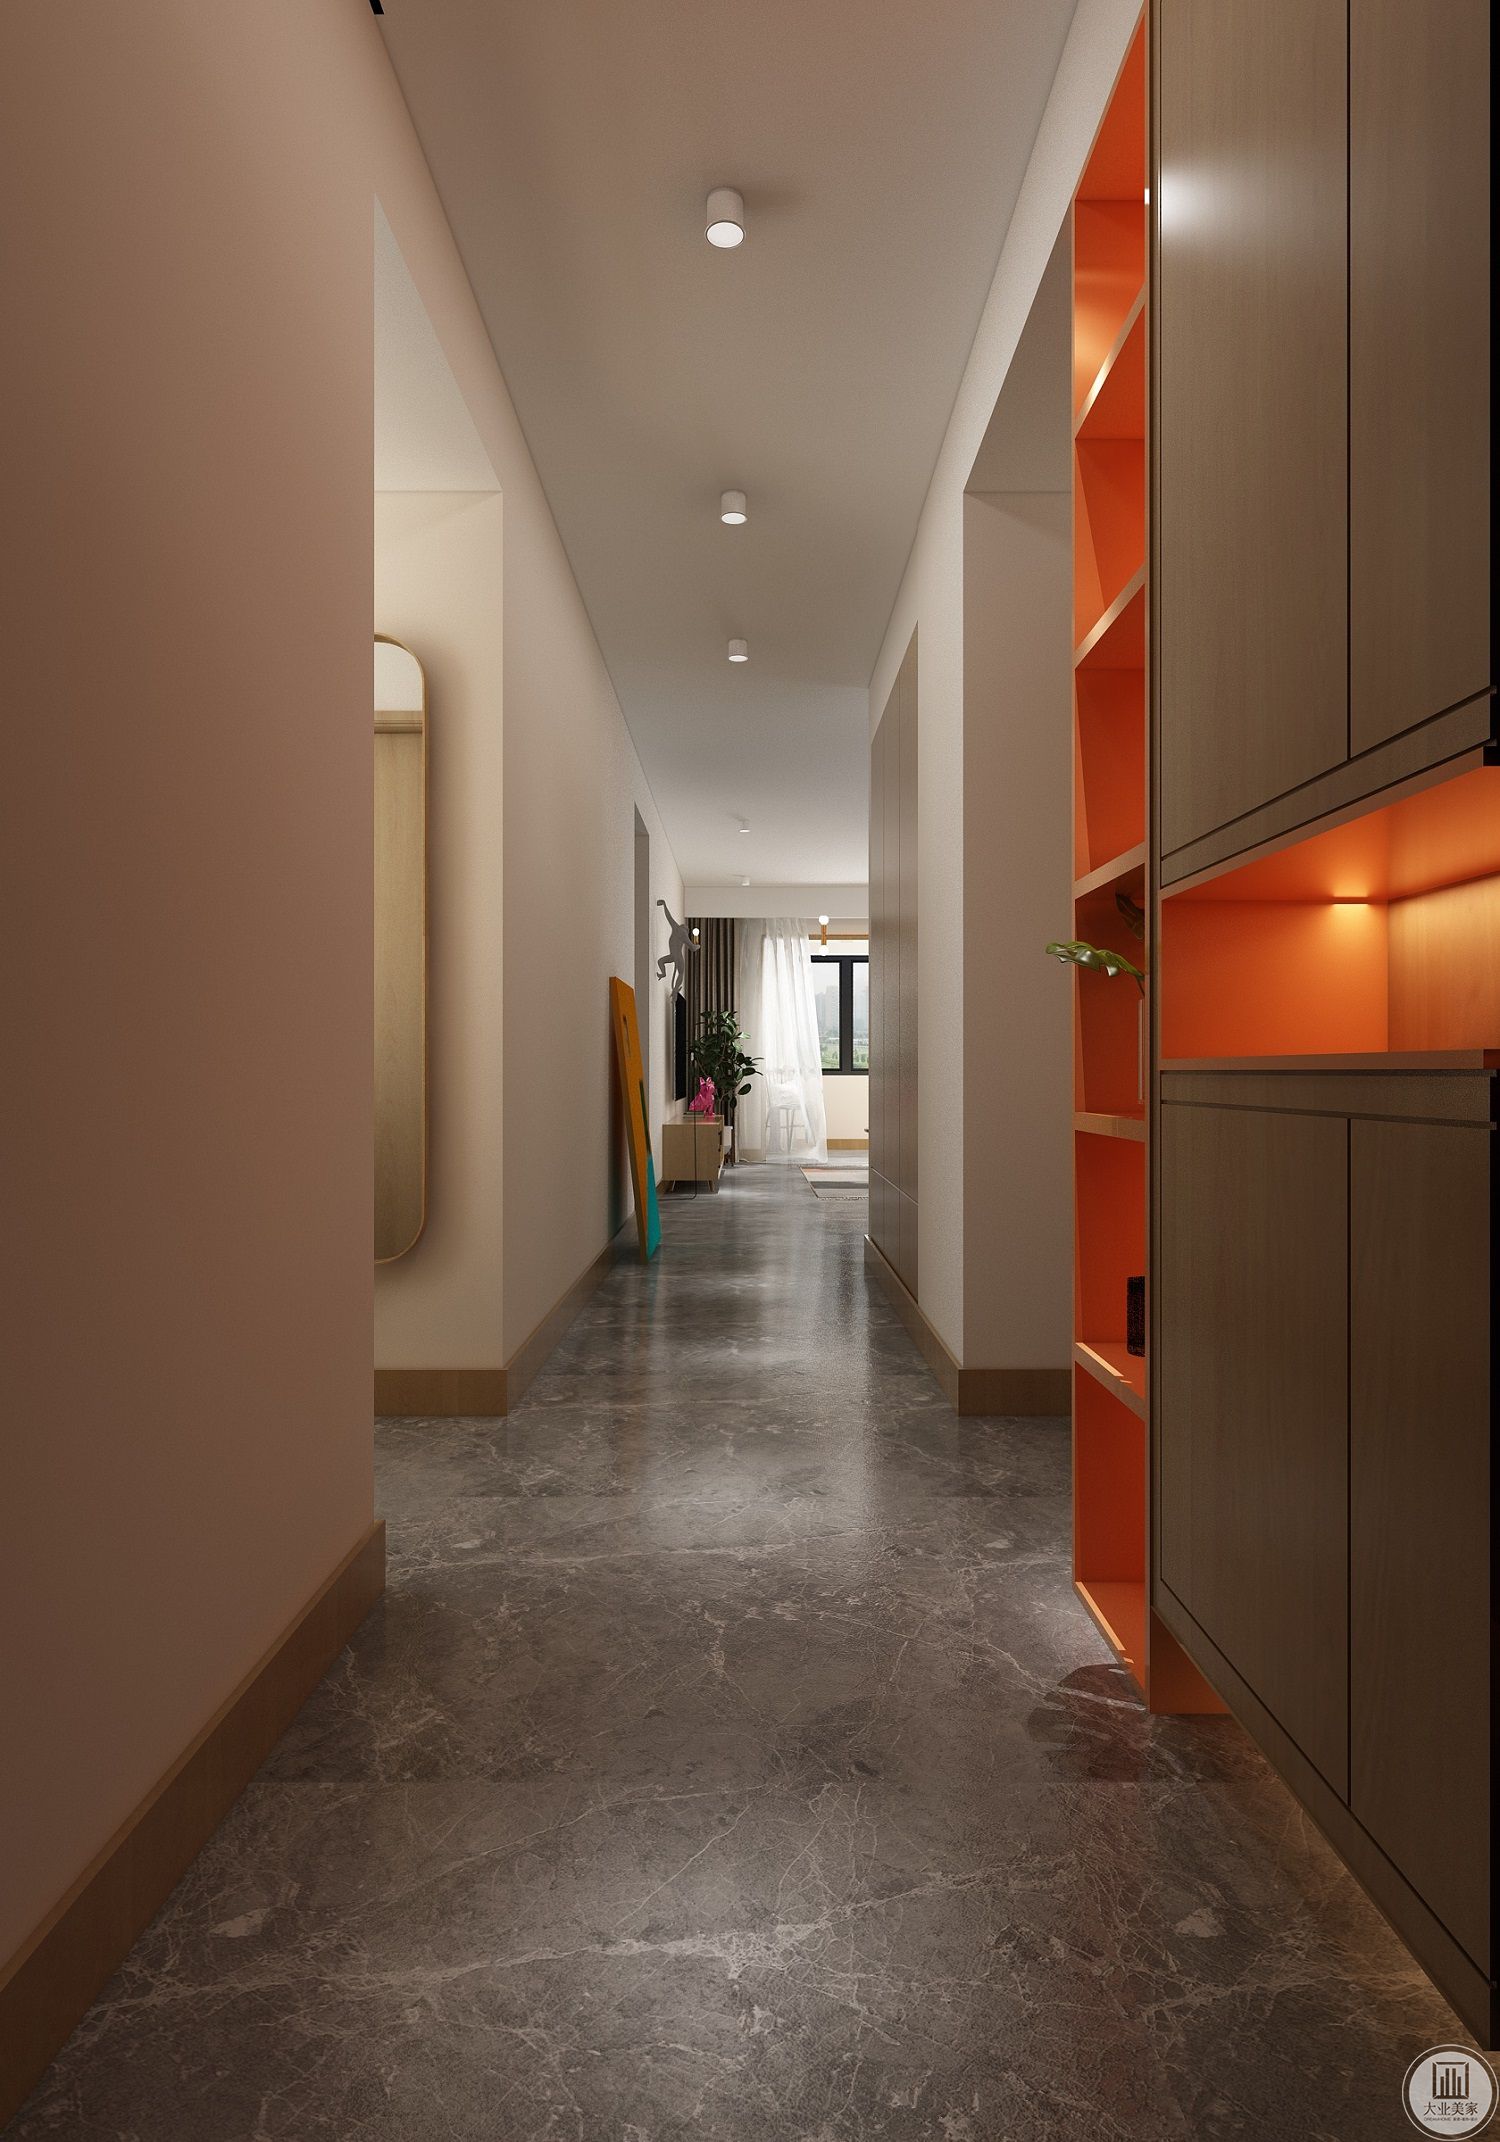 拼色的柜子让狭窄的走廊变得更加灵动。灯光的搭配让空间更有层次。